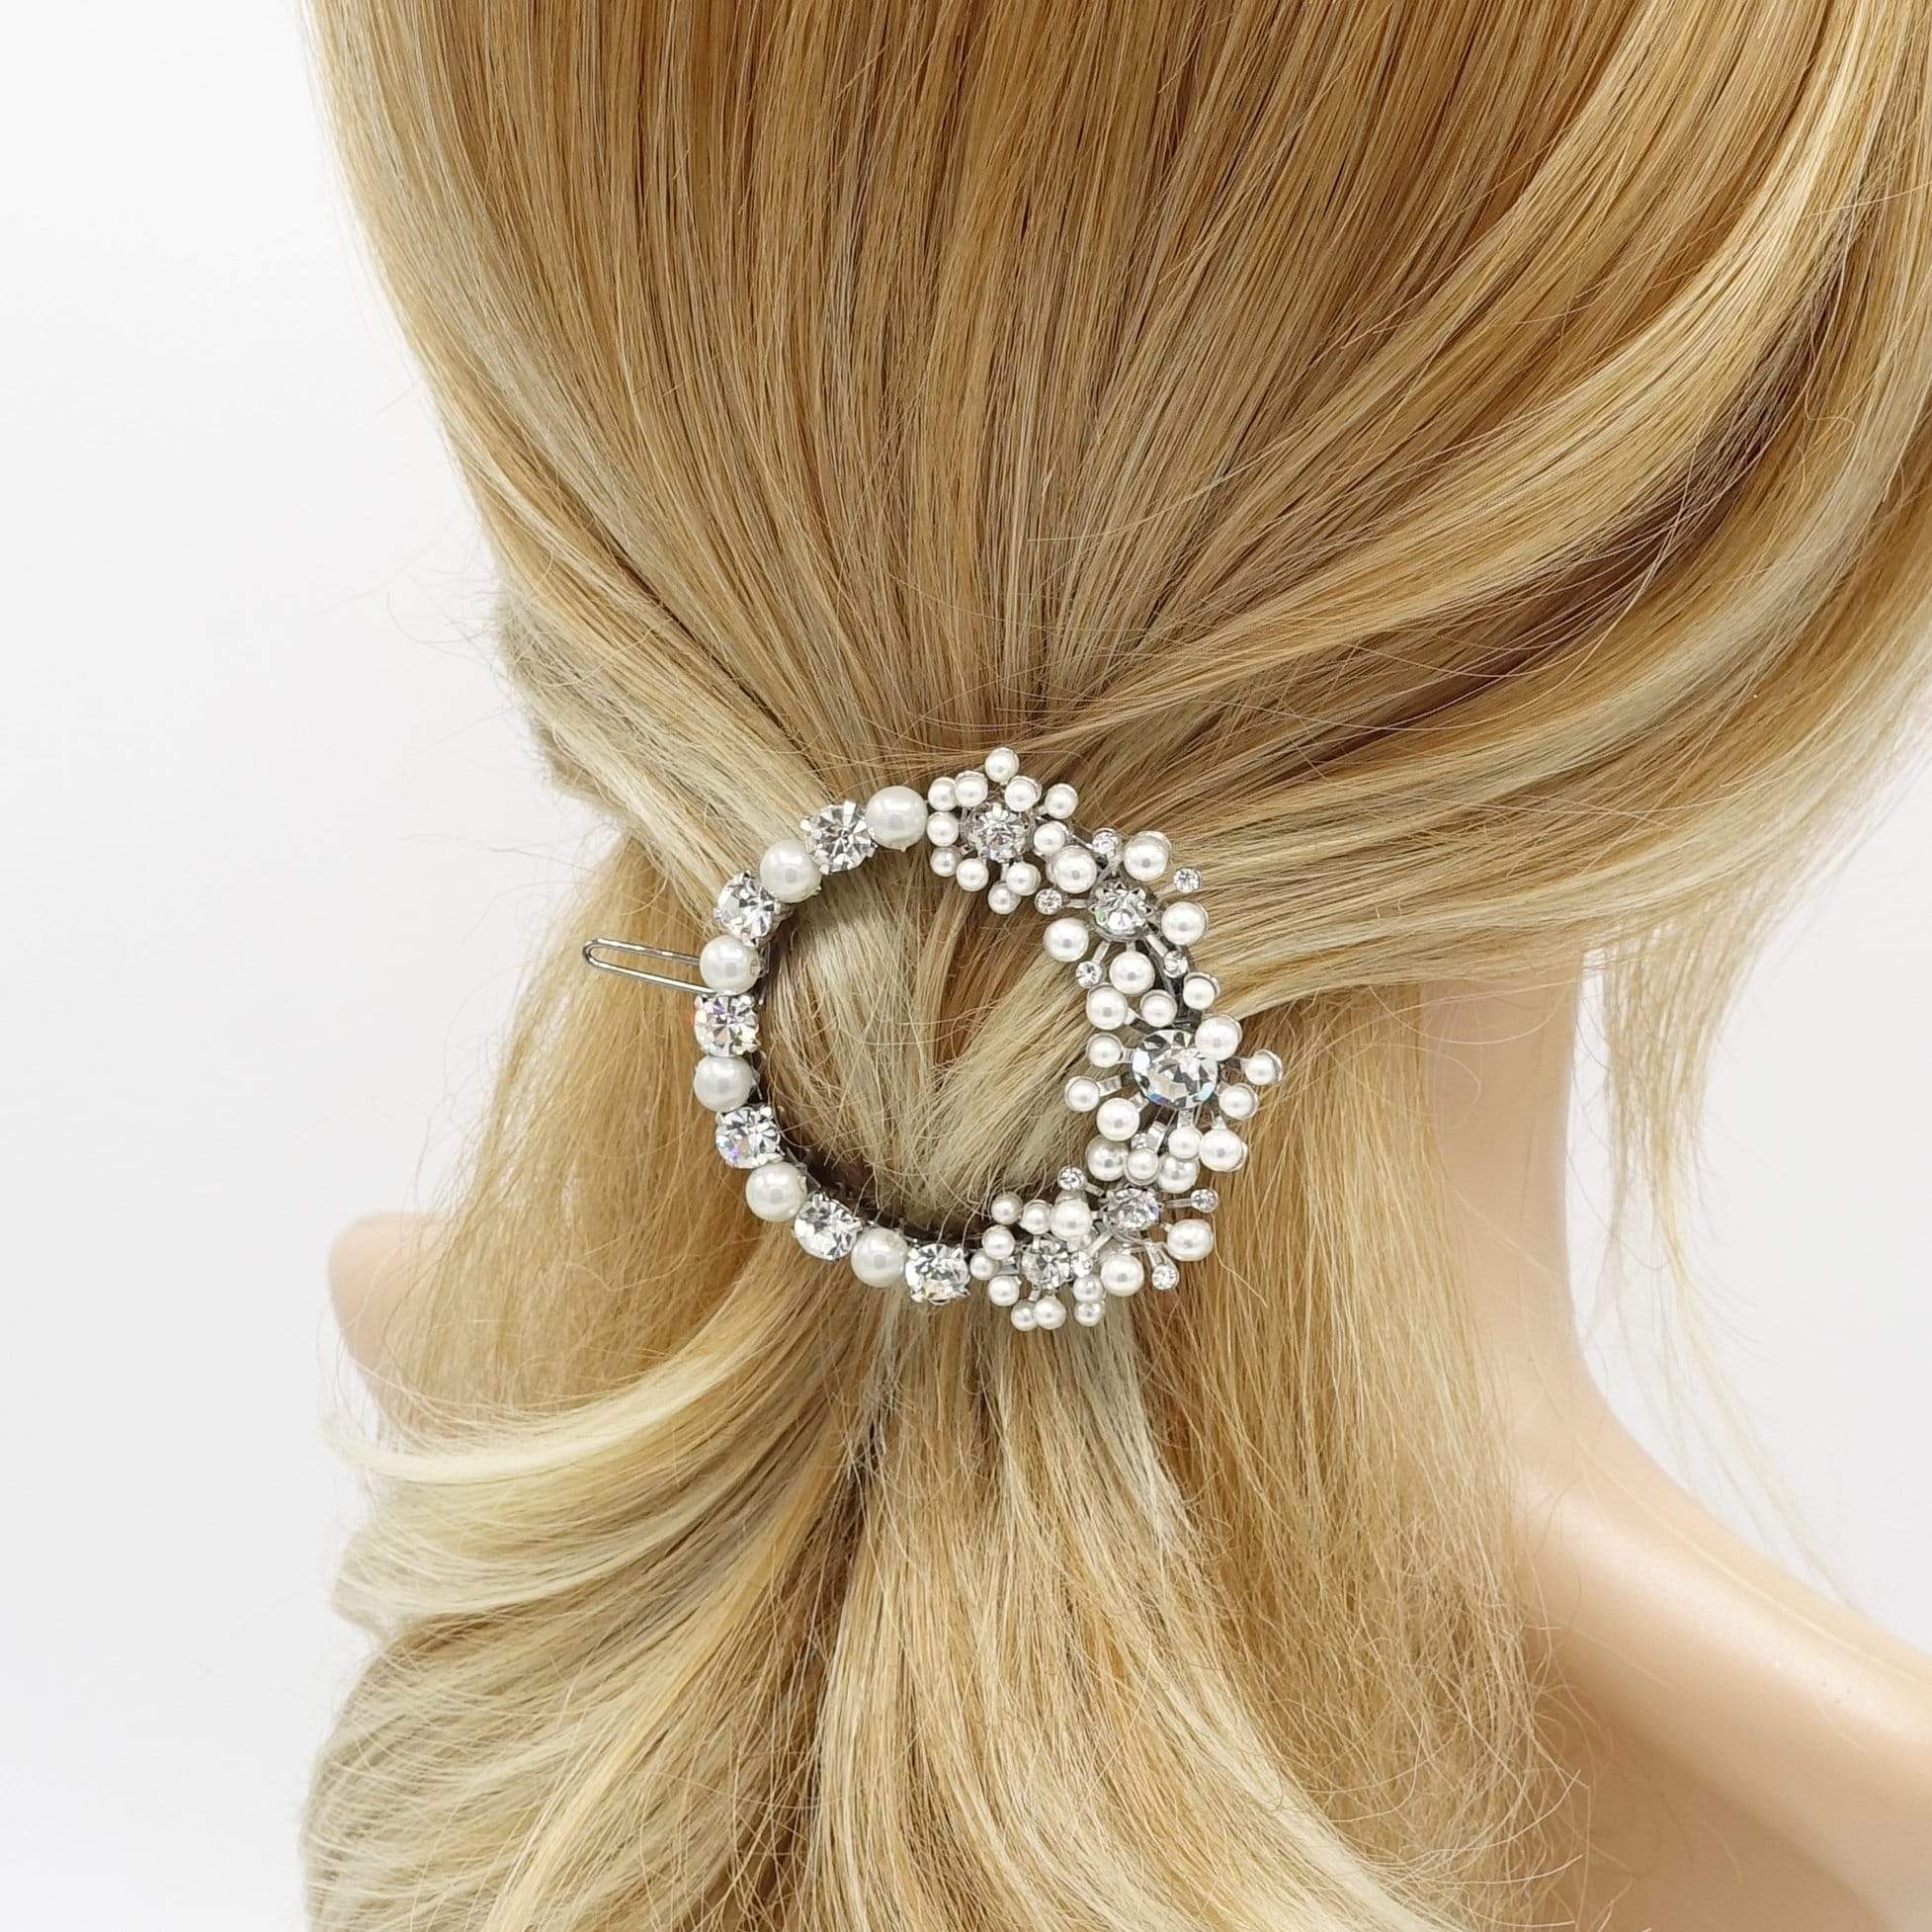 Faux Pearls And Flower Rhinestone Hair Clips Handmade Hair